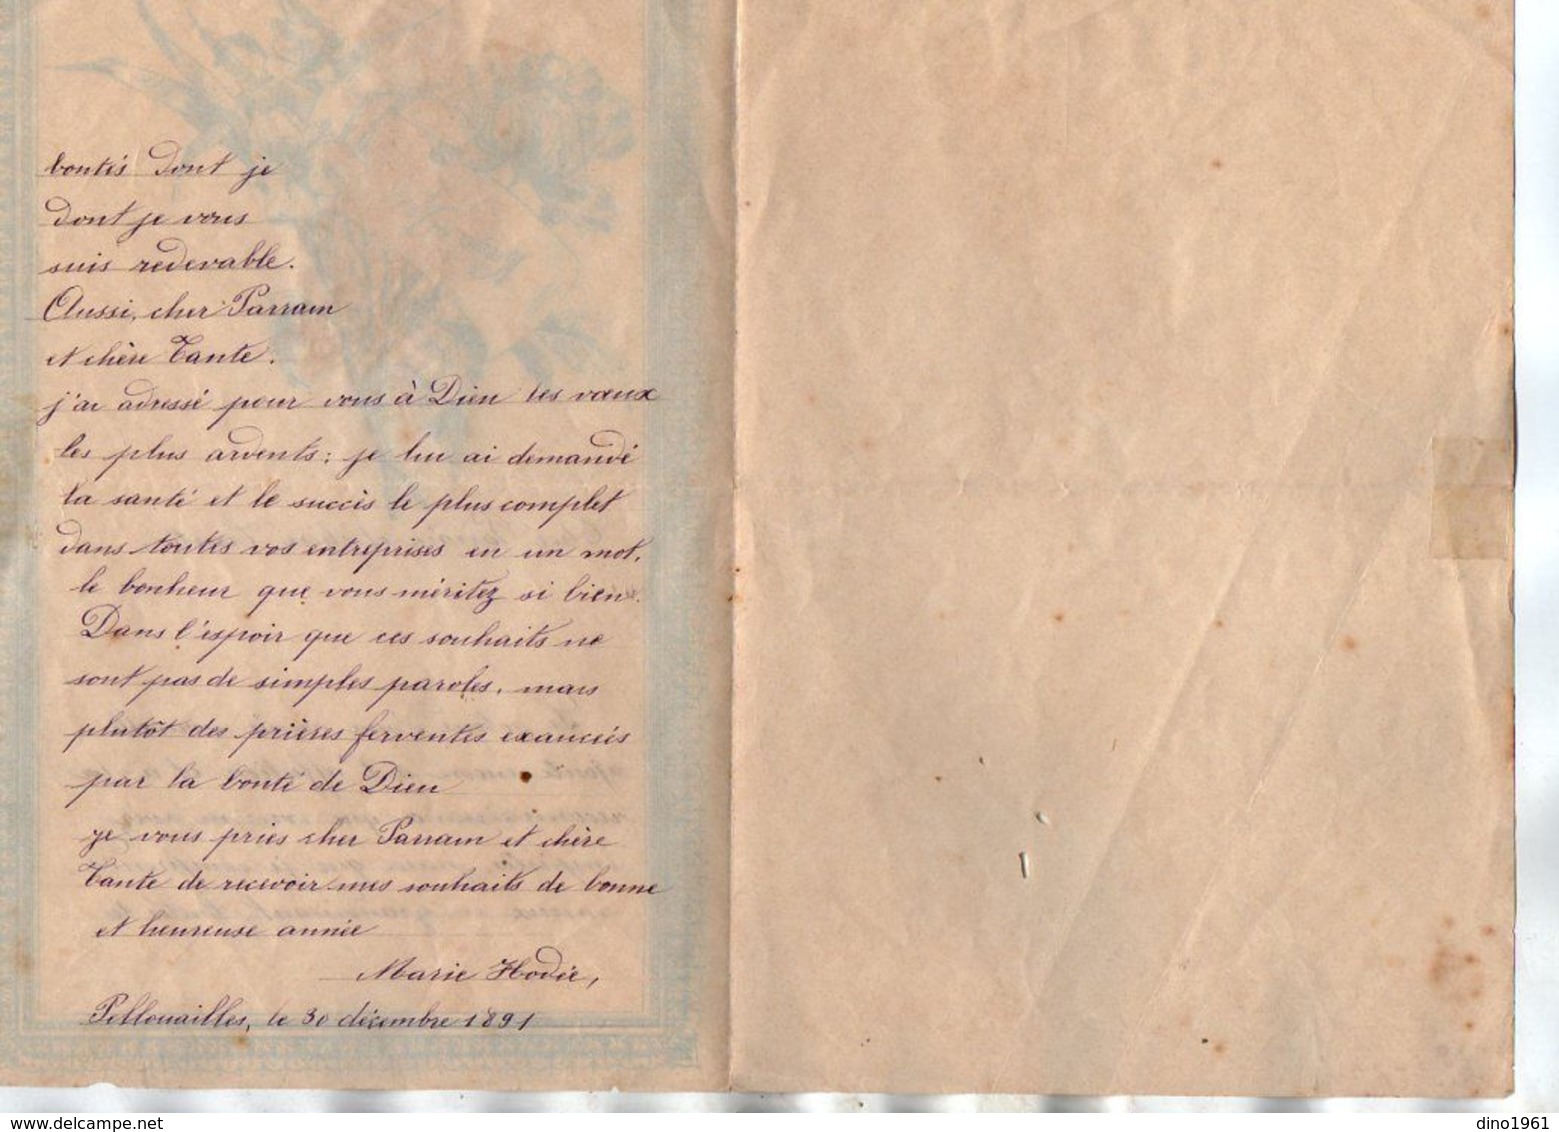 VP17.248 - 1891 - Lettre Illustrée Double Page & Découpi Fleurs - Melle Marie HODEE à PELLOUAILLES - Fleurs